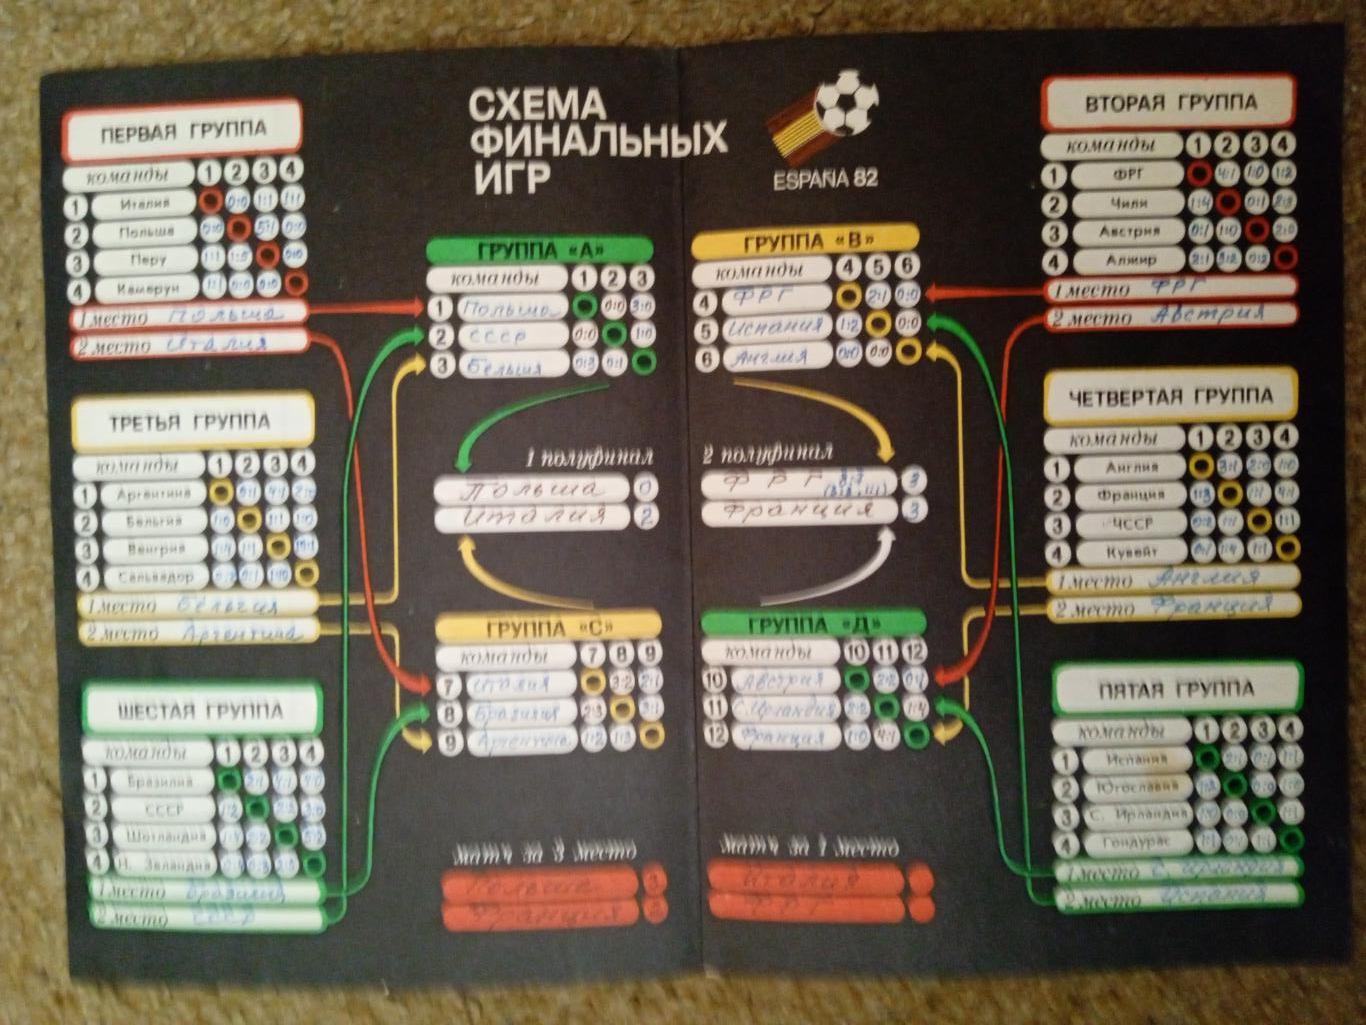 Чемпионат мира-1982,Испания.Календарь. 2